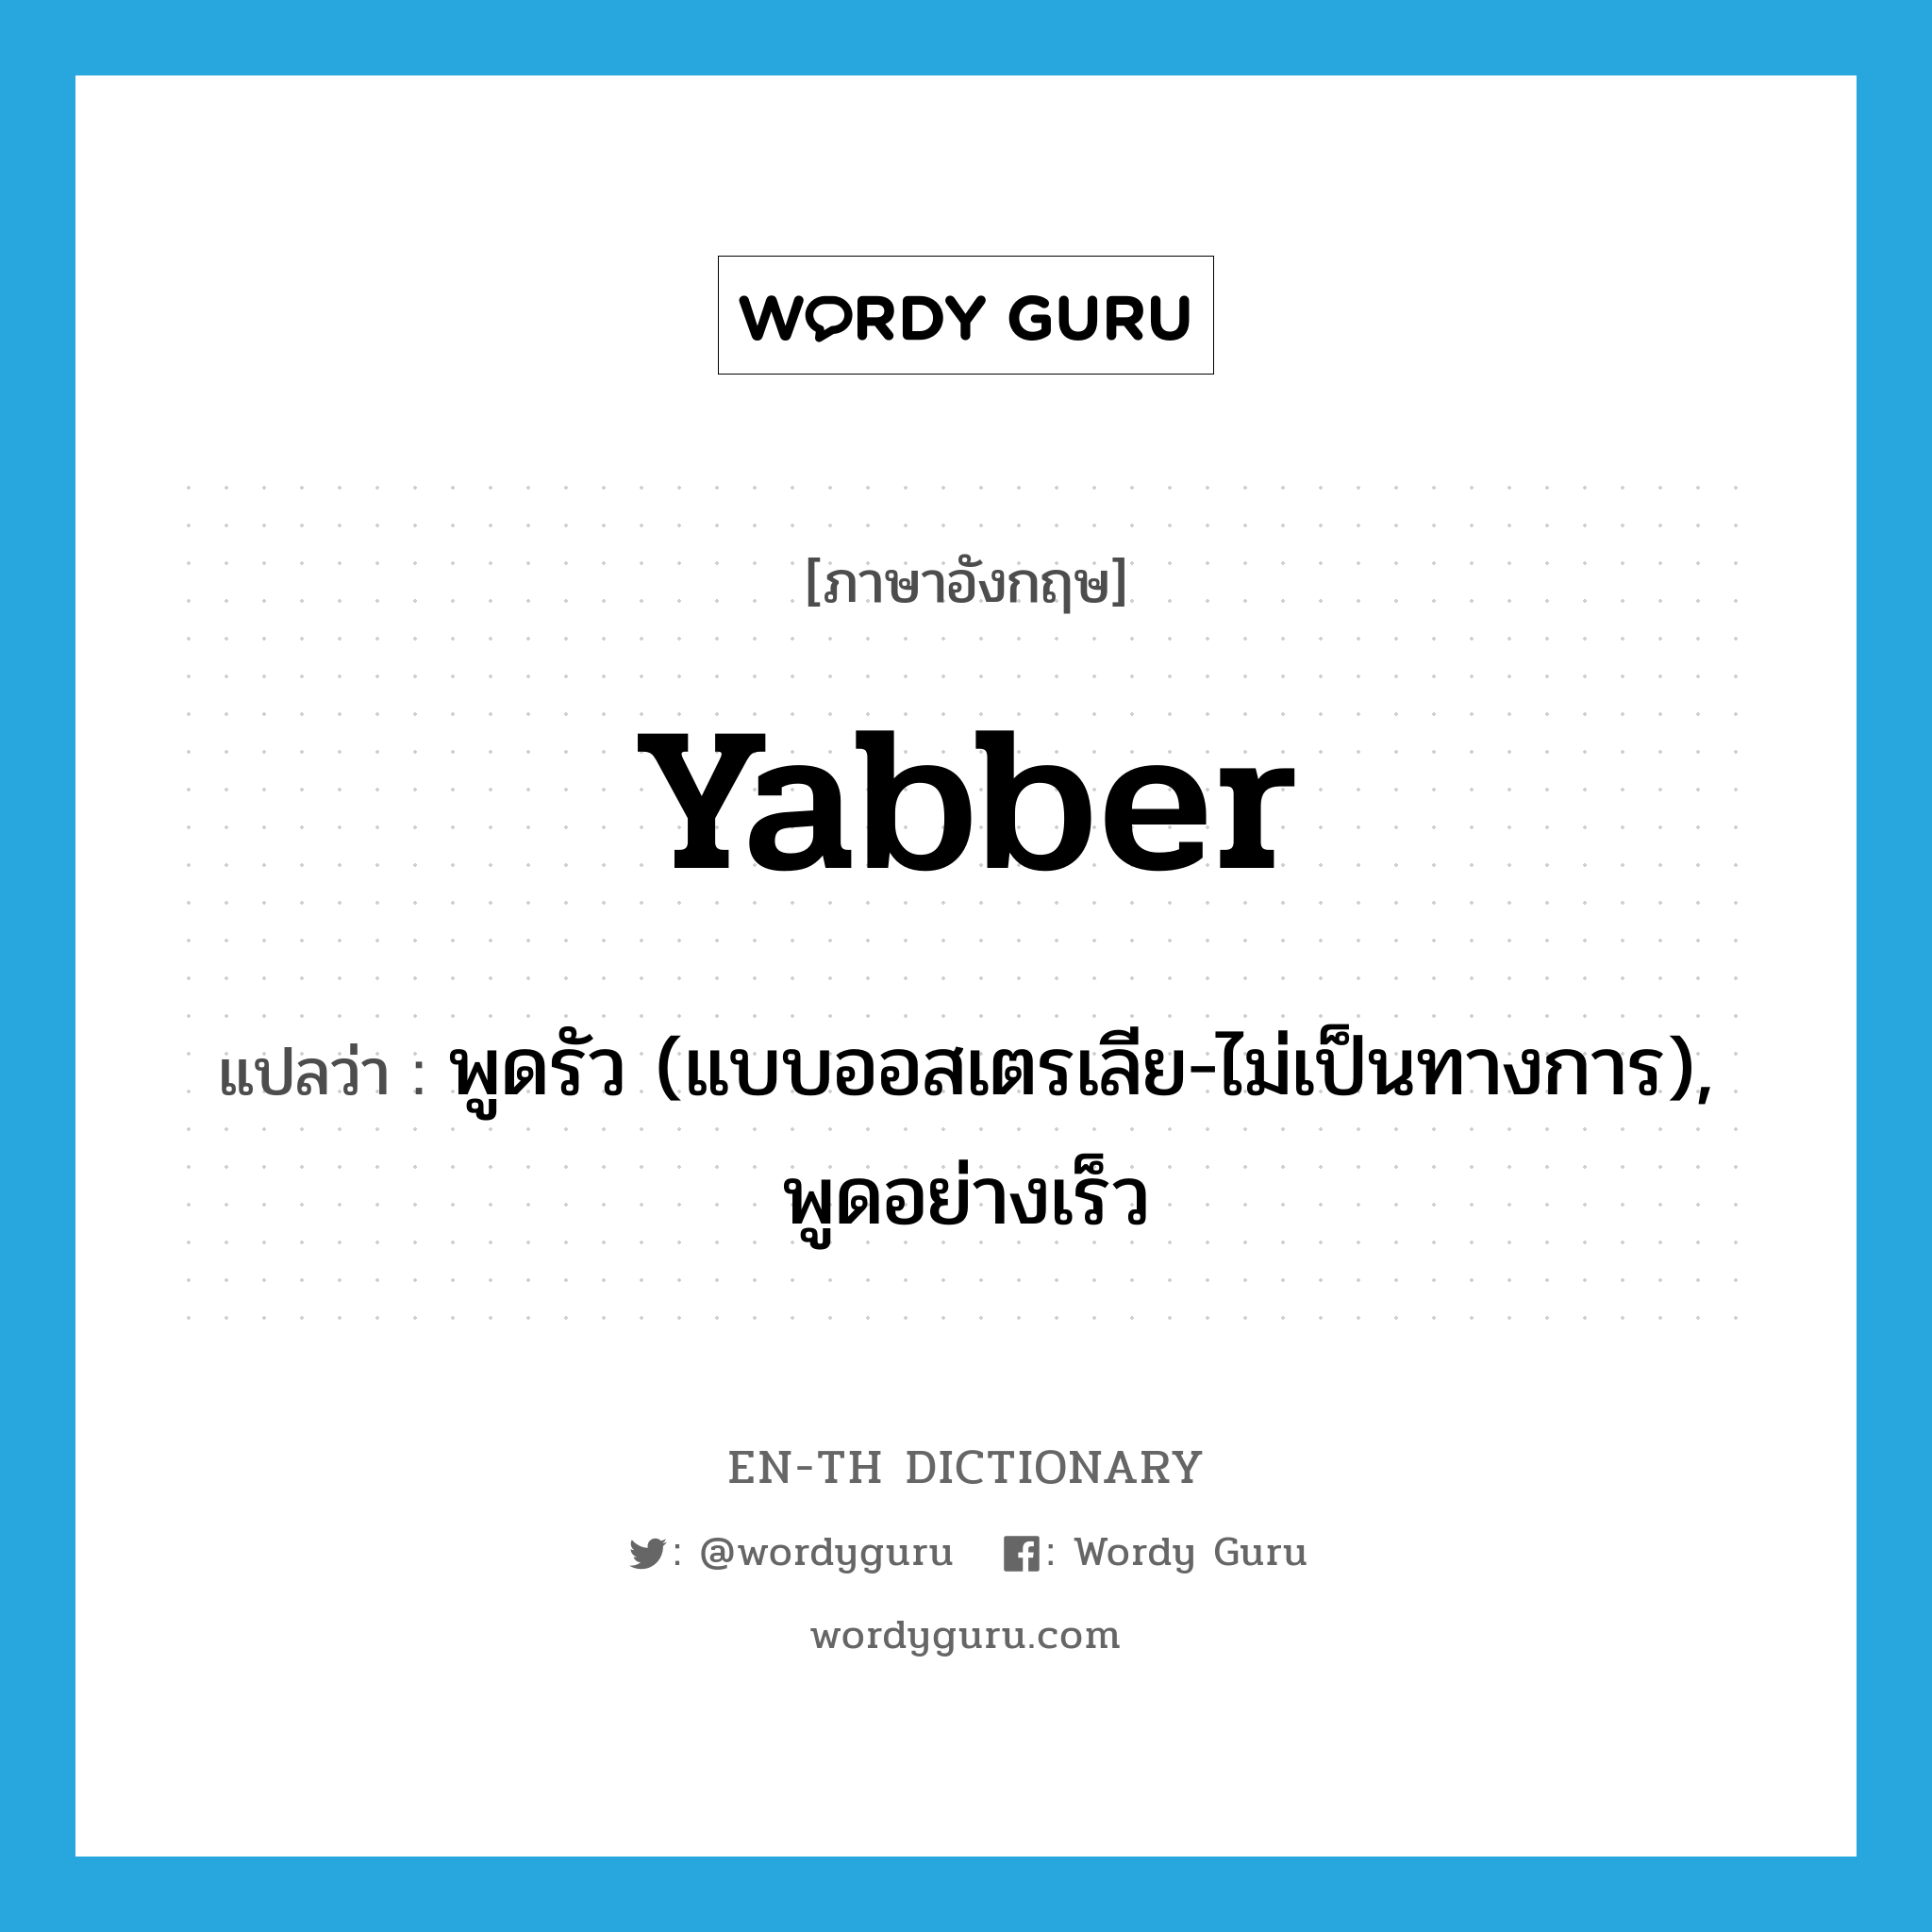 พูดรัว (แบบออสเตรเลีย-ไม่เป็นทางการ), พูดอย่างเร็ว ภาษาอังกฤษ?, คำศัพท์ภาษาอังกฤษ พูดรัว (แบบออสเตรเลีย-ไม่เป็นทางการ), พูดอย่างเร็ว แปลว่า yabber ประเภท VT หมวด VT